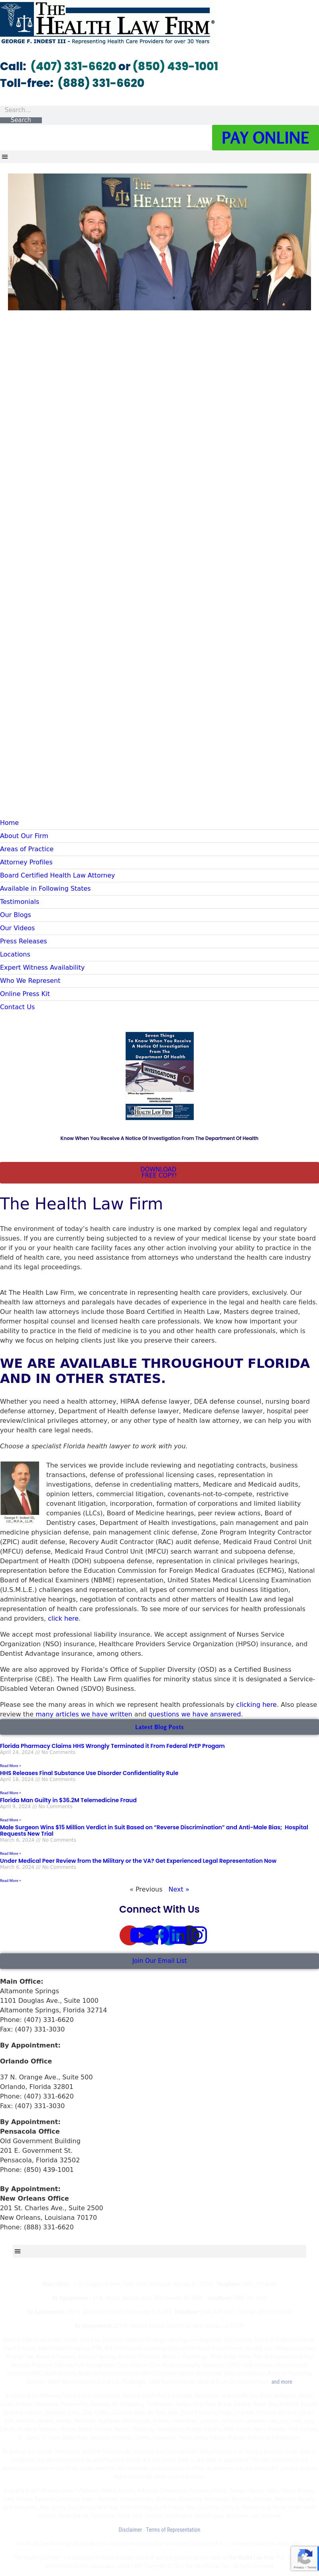 The Health Law Firm - Orlando FL Lawyers